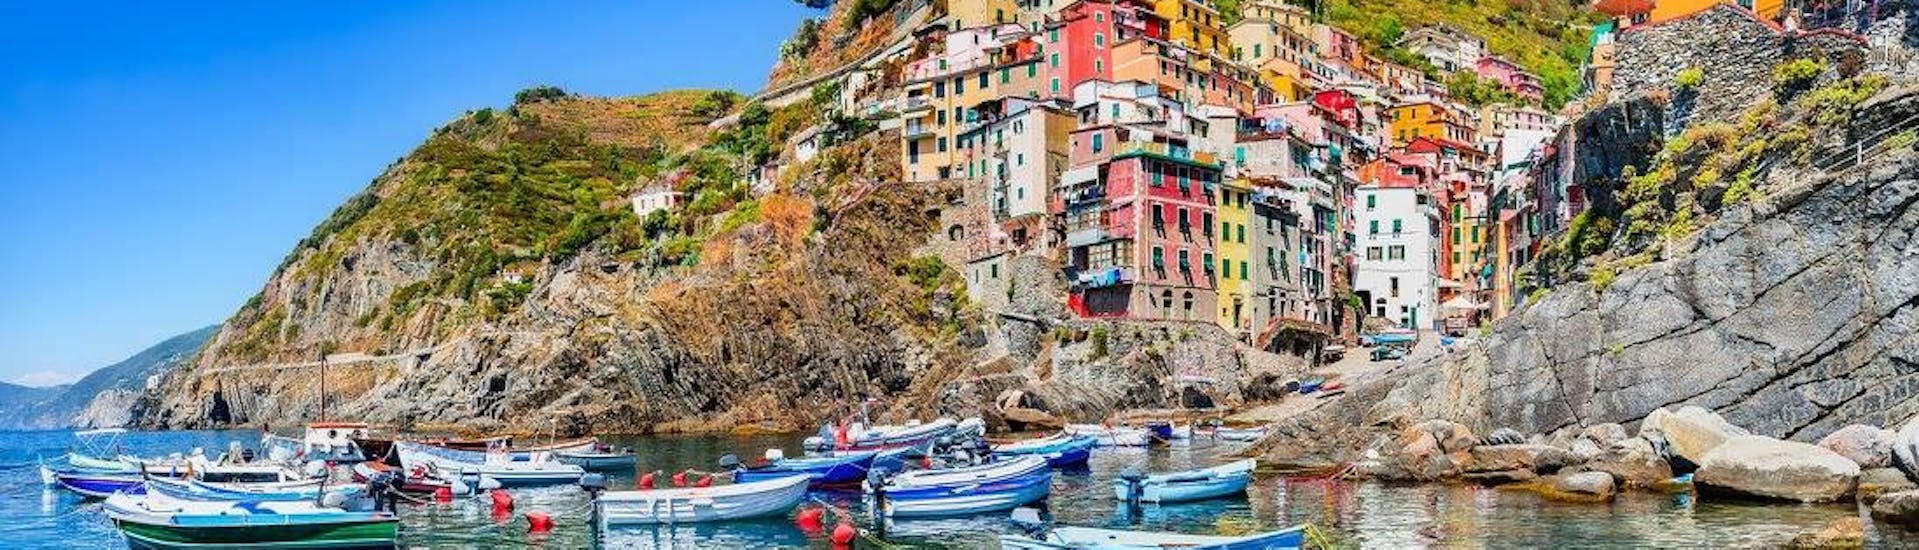 La vue imprenable que vous pouvez admirer lors d'une balade en bateau dans les Cinque Terre avec Costa di Faraggiana Levanto.